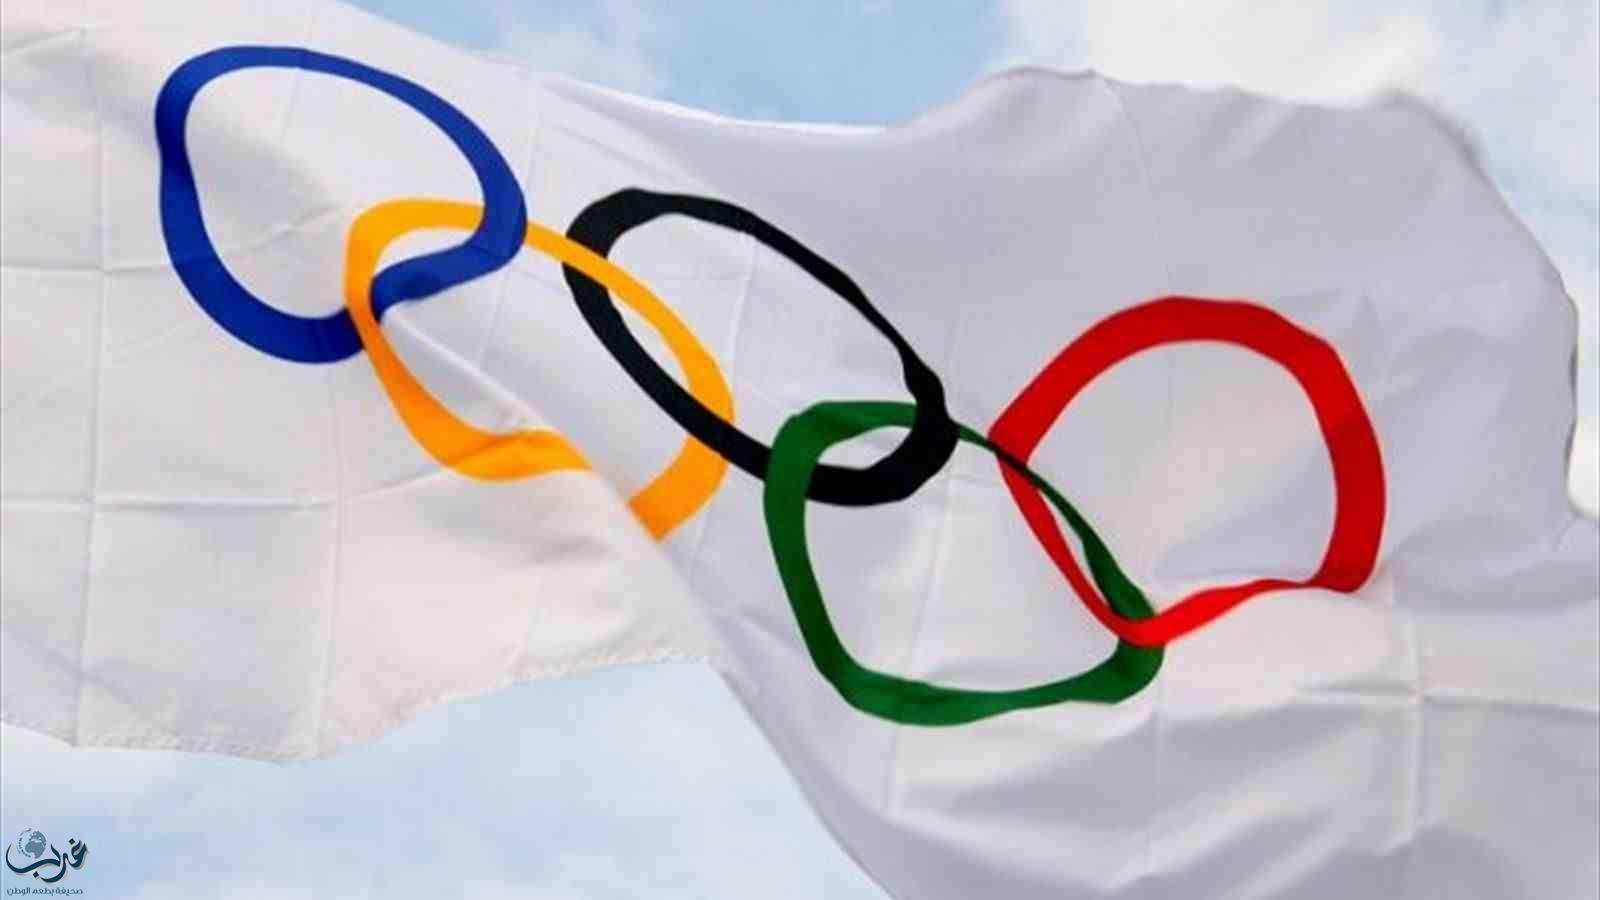 اللجنة الأولمبية الدولية تجرد 3 رياضيين من ميدالياتهم